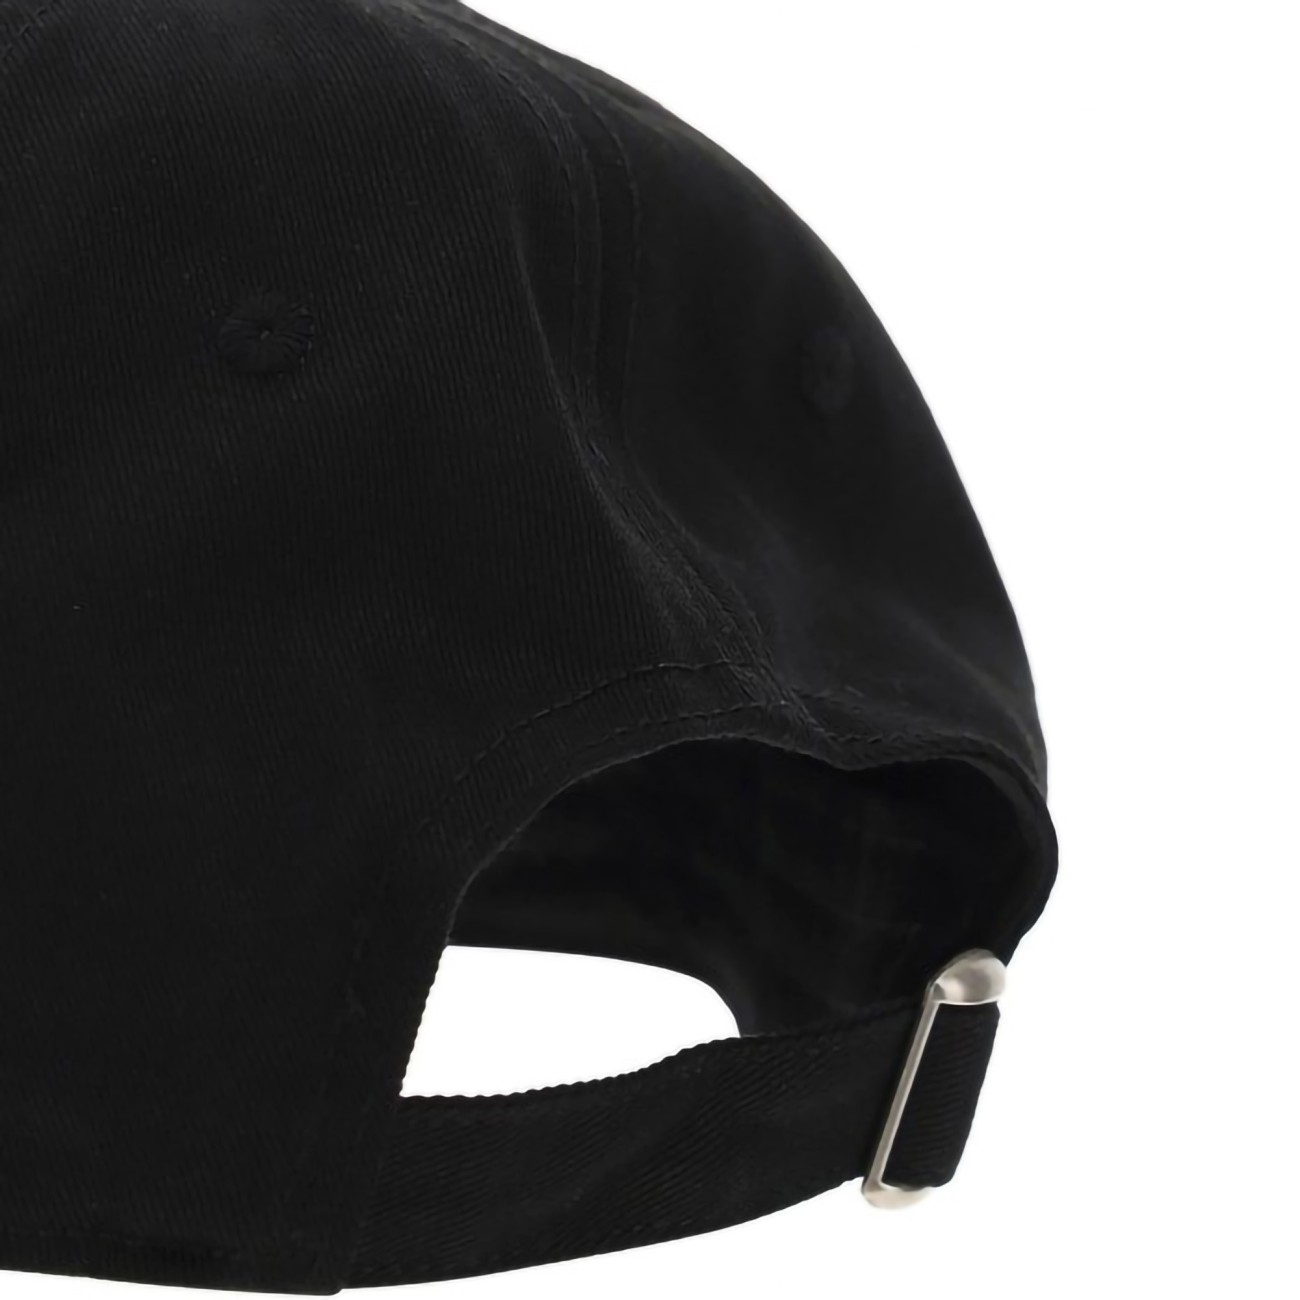 Bel Air black visor cap